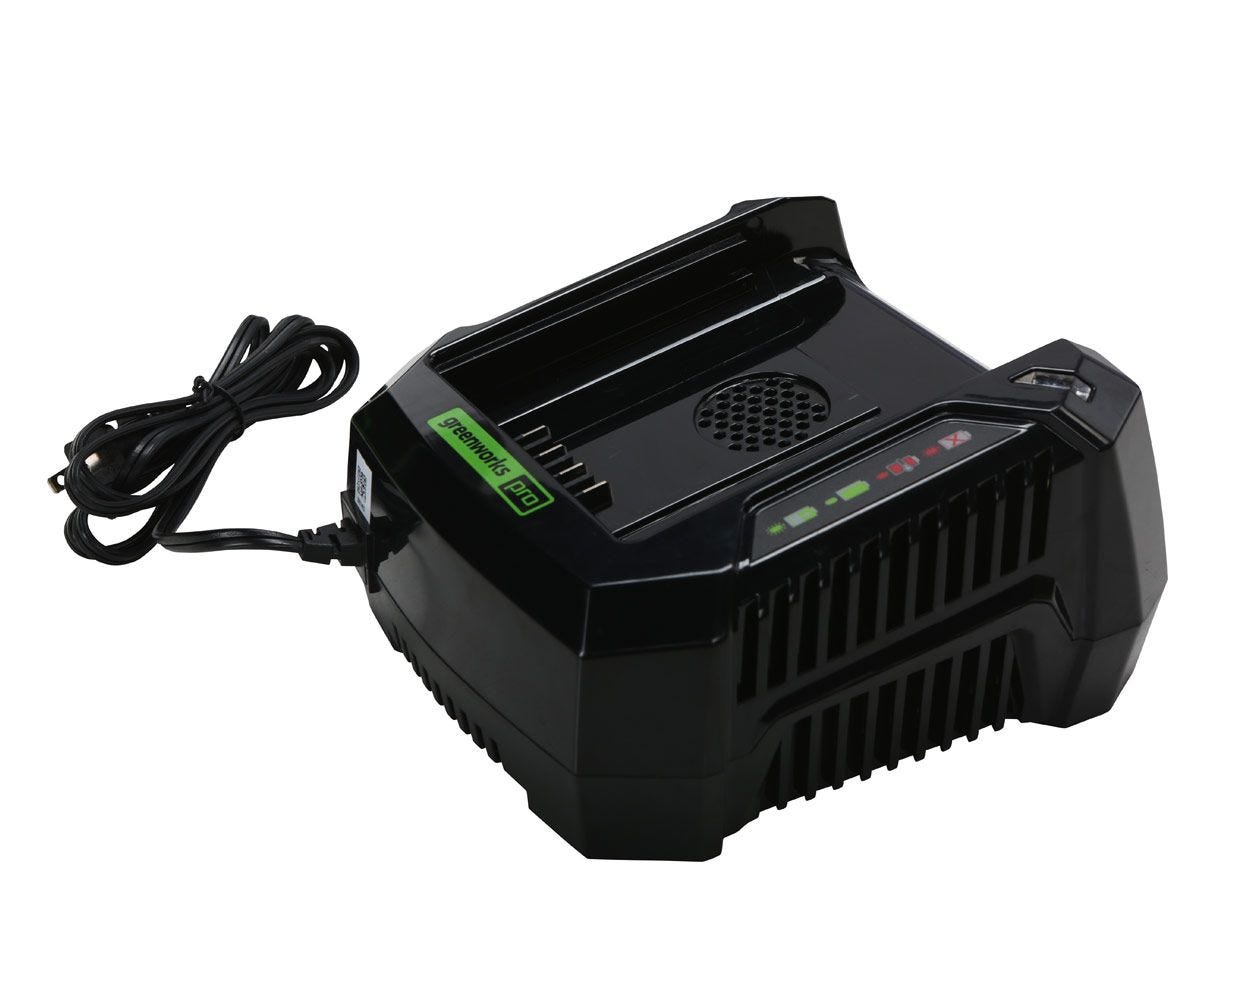 60V Rapid Battery Charger | Greenworks Pro